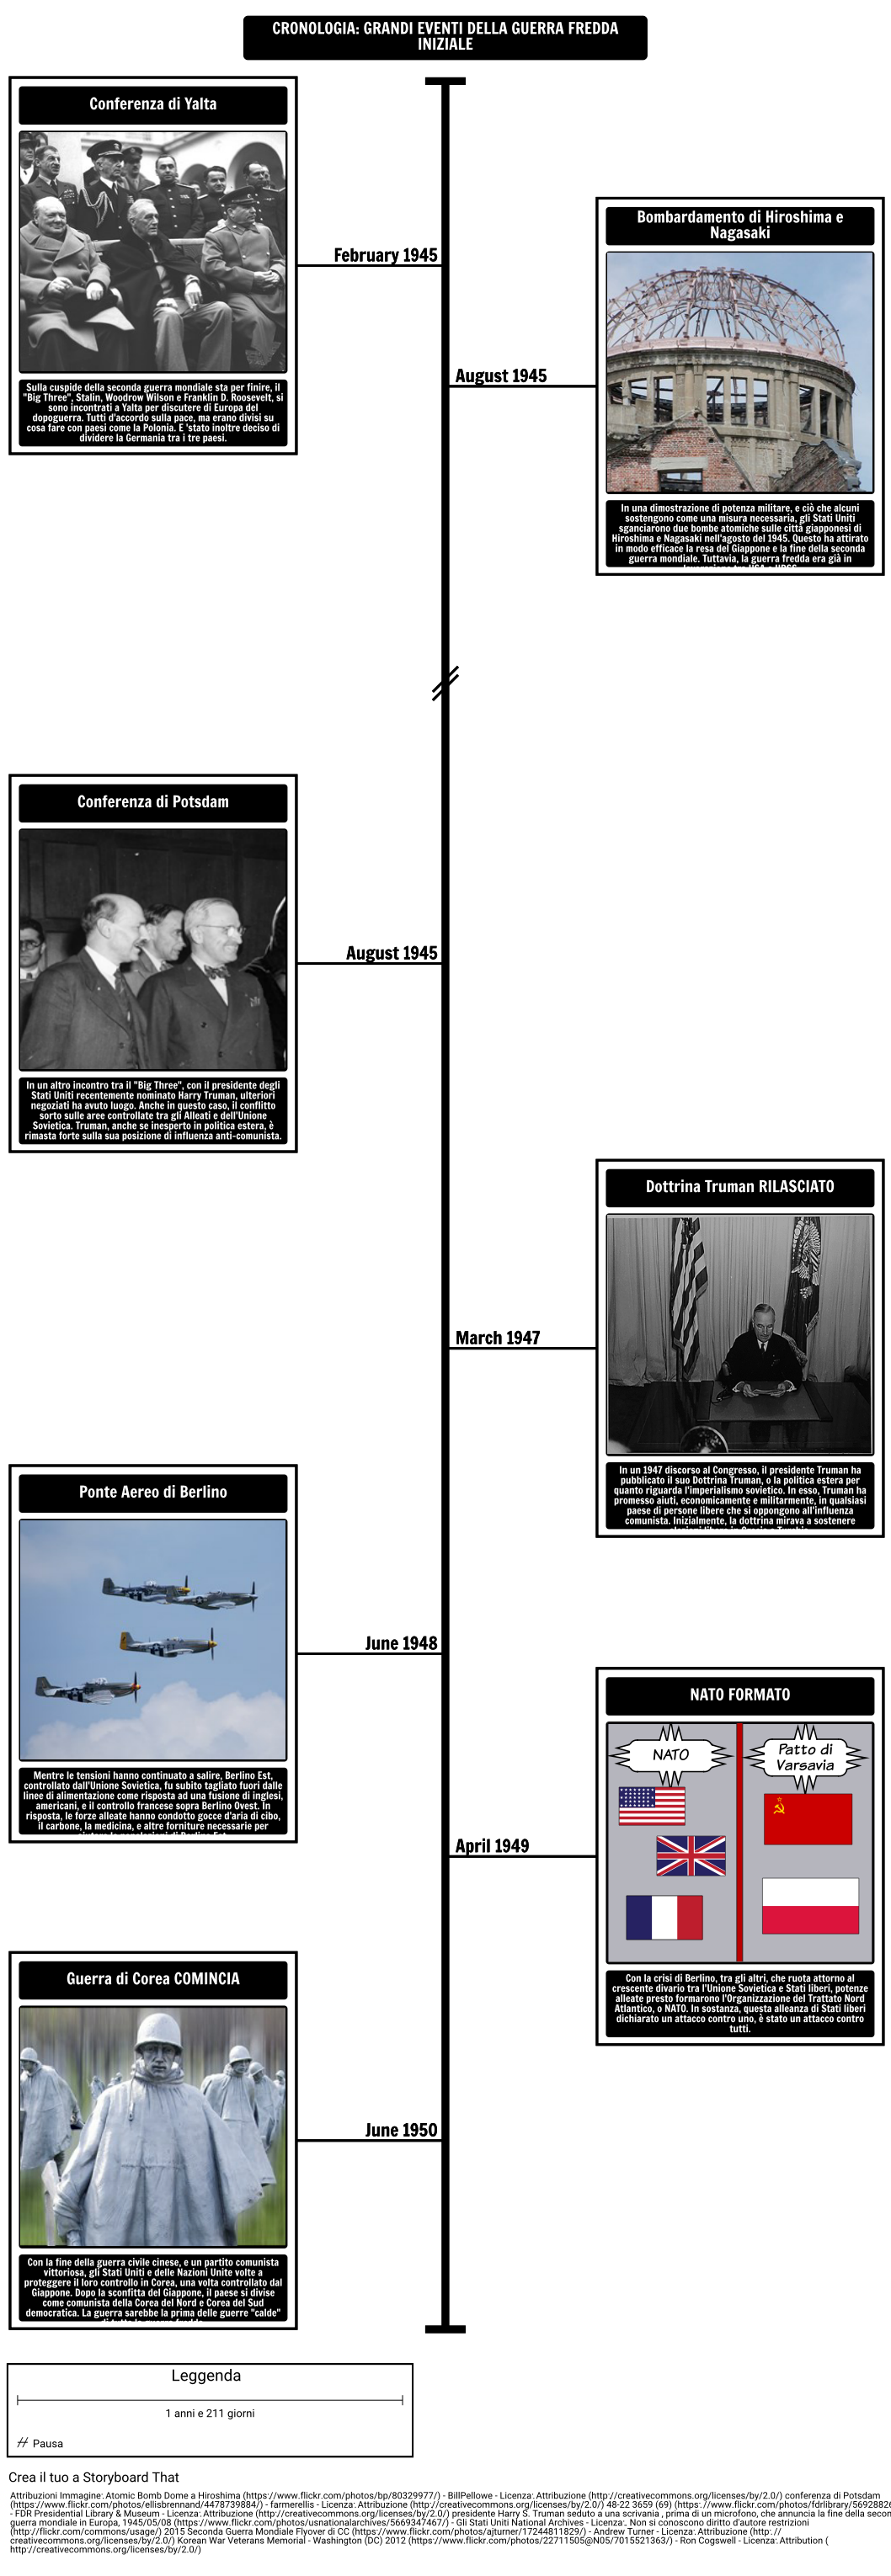 Timeline - Grandi Eventi Della Guerra Fredda Iniziale